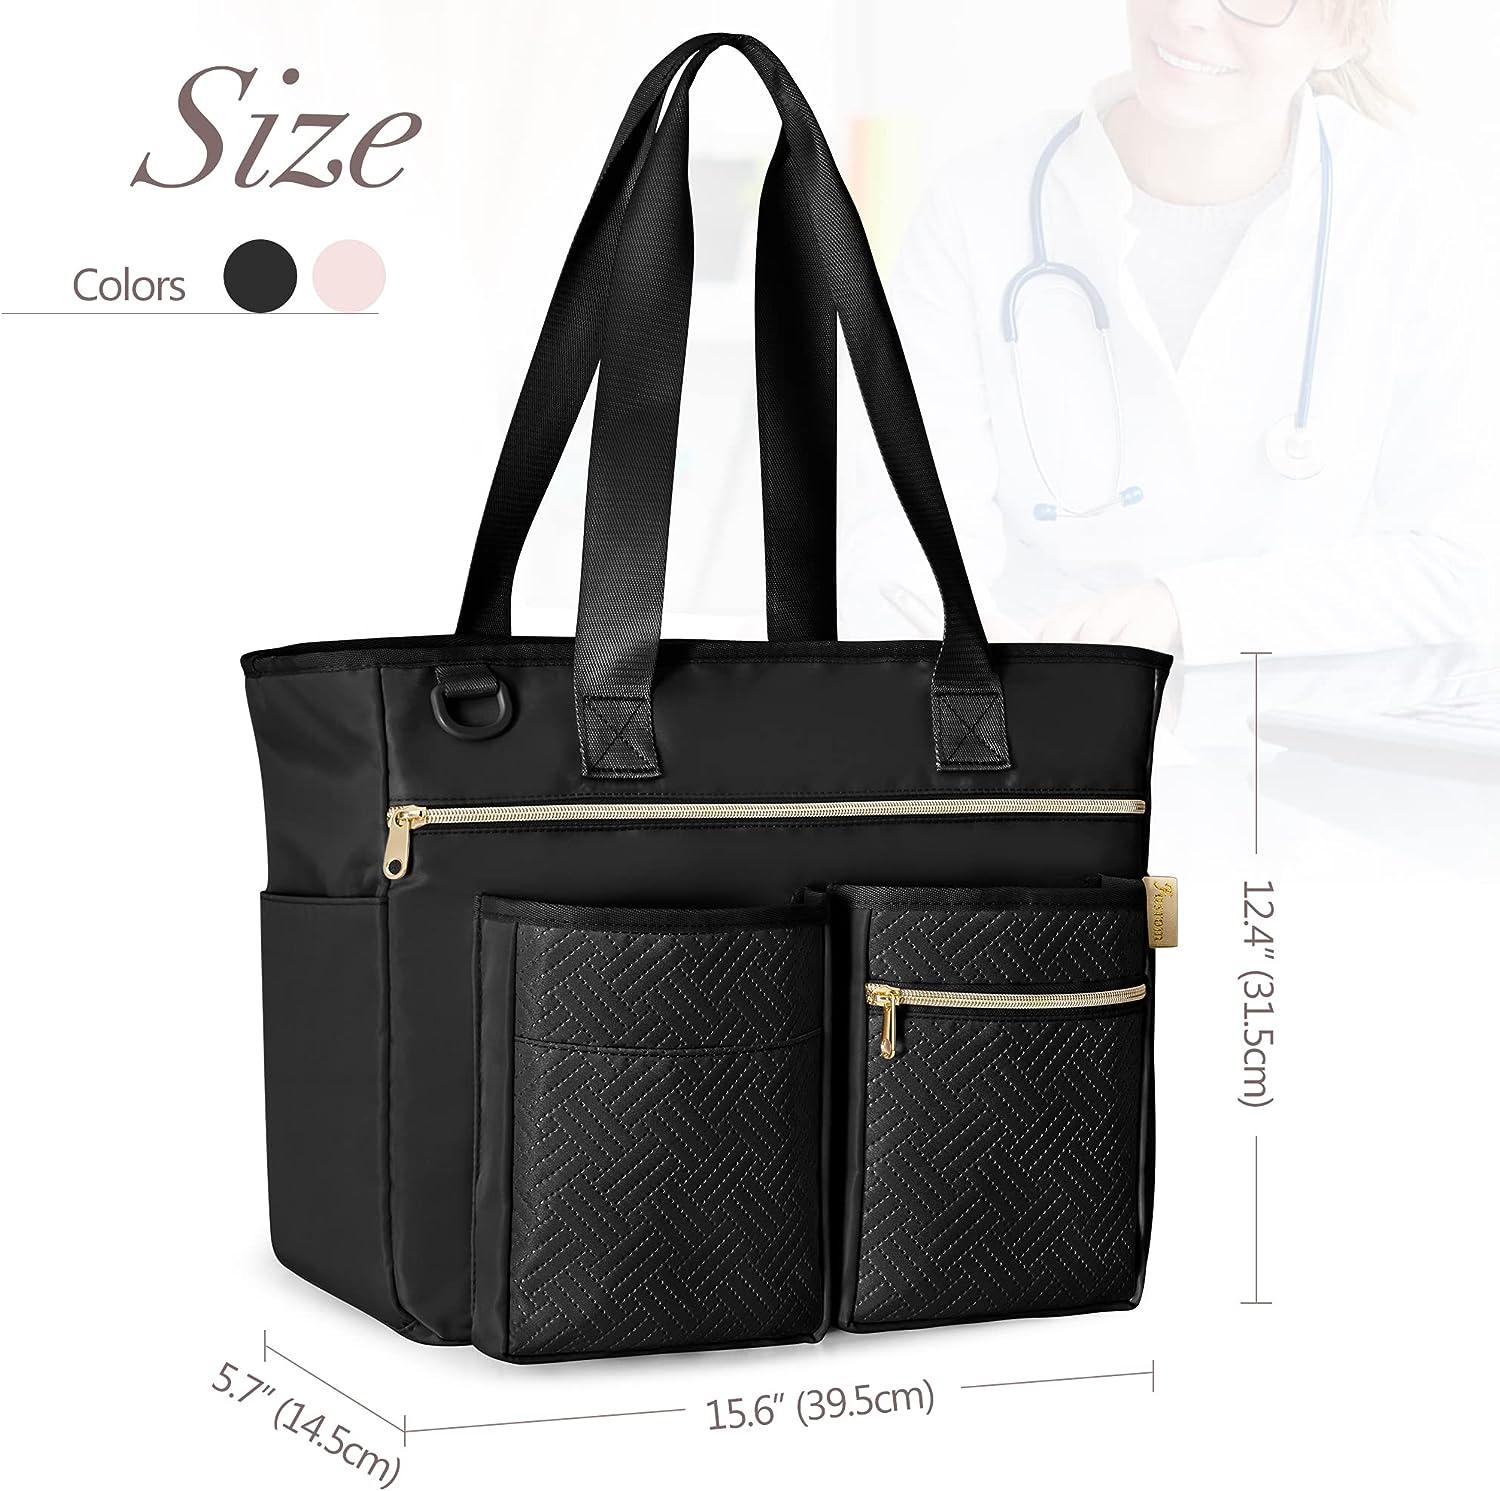 Nurse Clinical Bag - Etsy